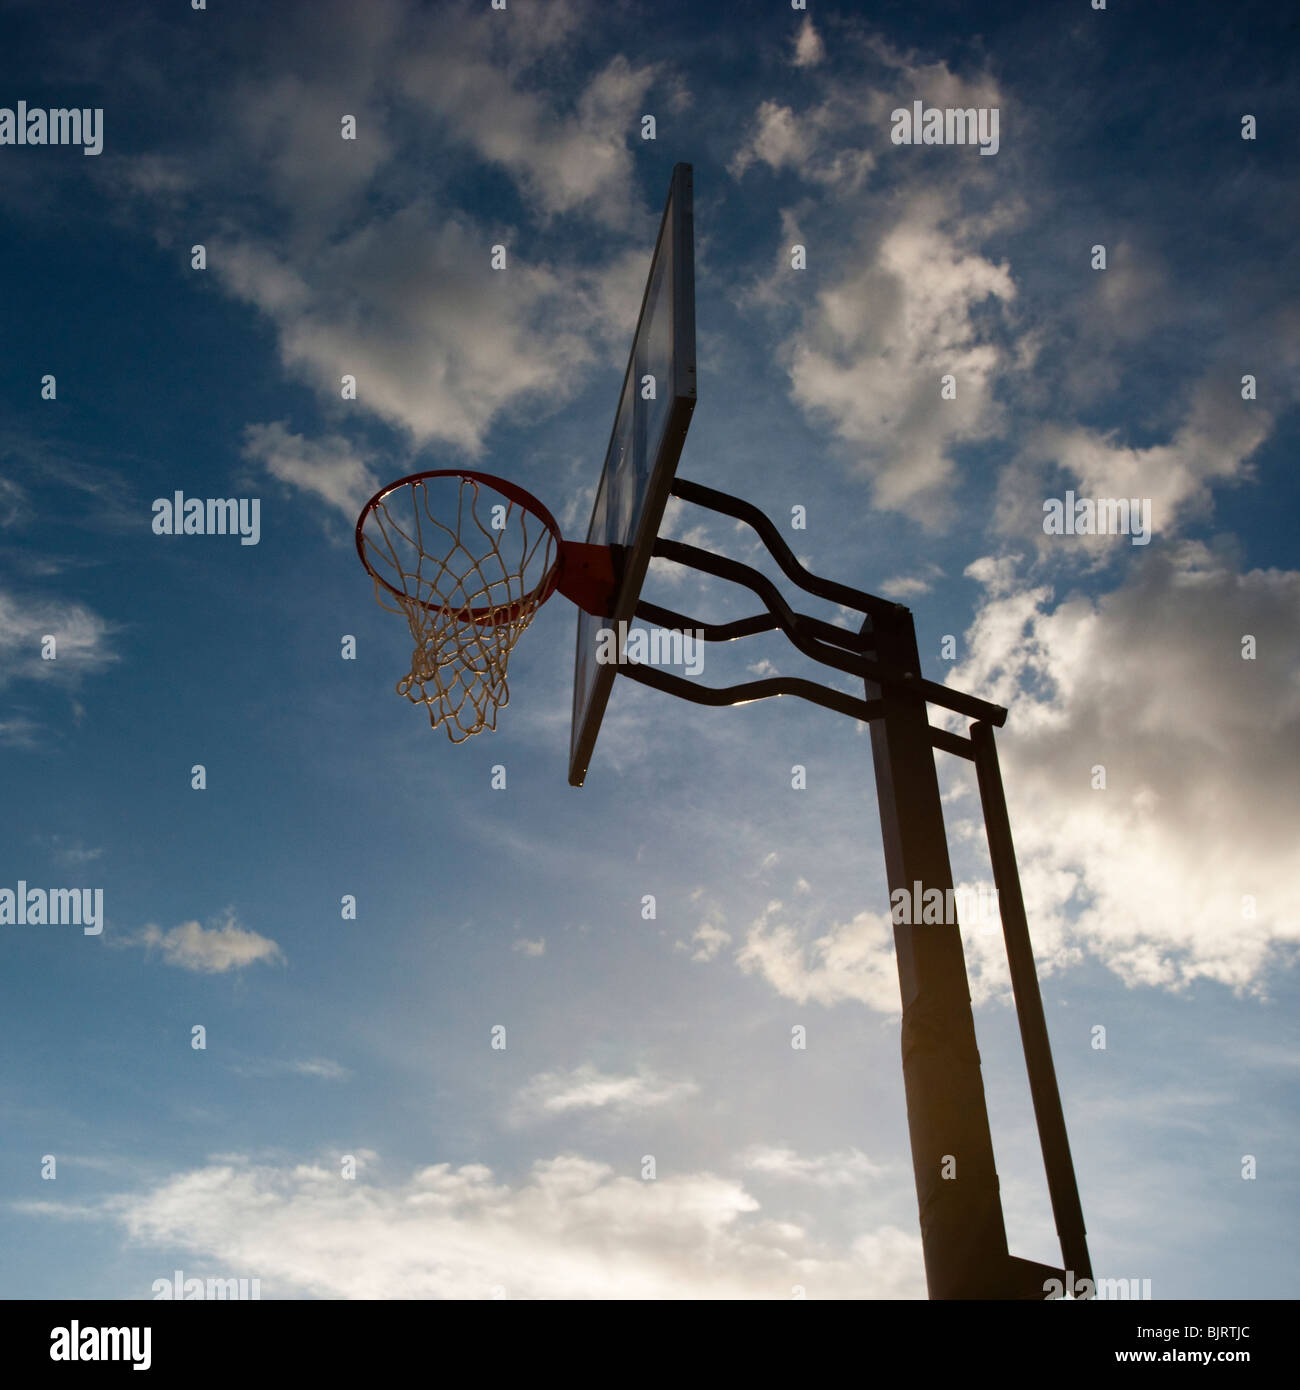 USA, Utah, Salt Lake City, panier de basket-ball contre sky, low angle view Banque D'Images